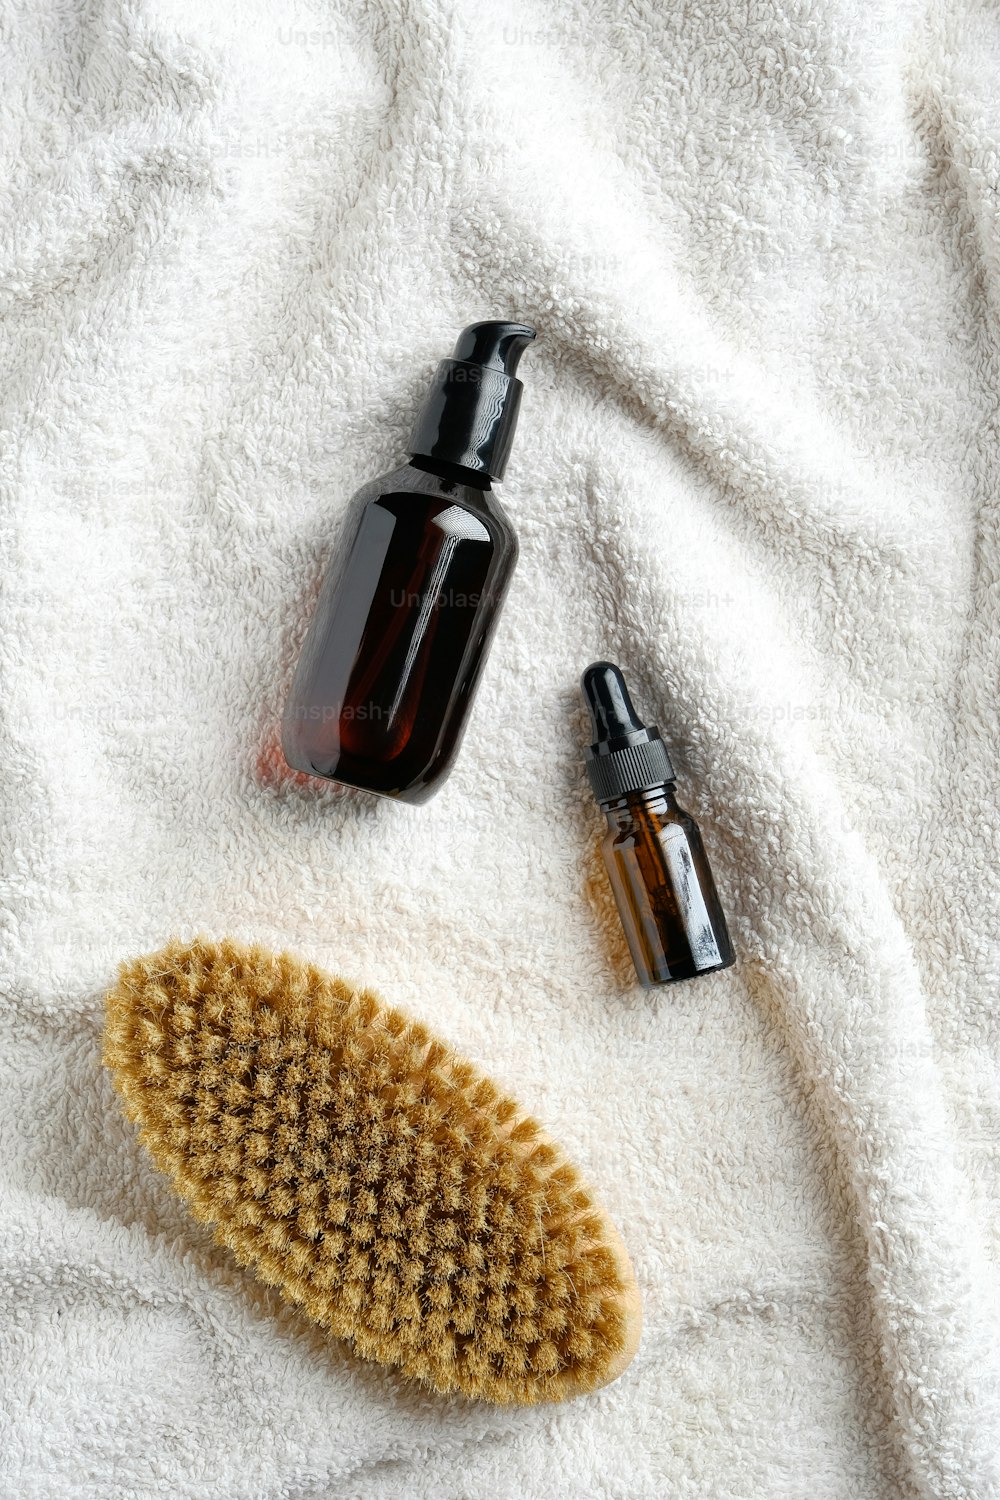 Brosse sèche et huiles essentielles sur serviette blanche dans la salle de bain. Soins du corps, concept de traitement de la cellulite.